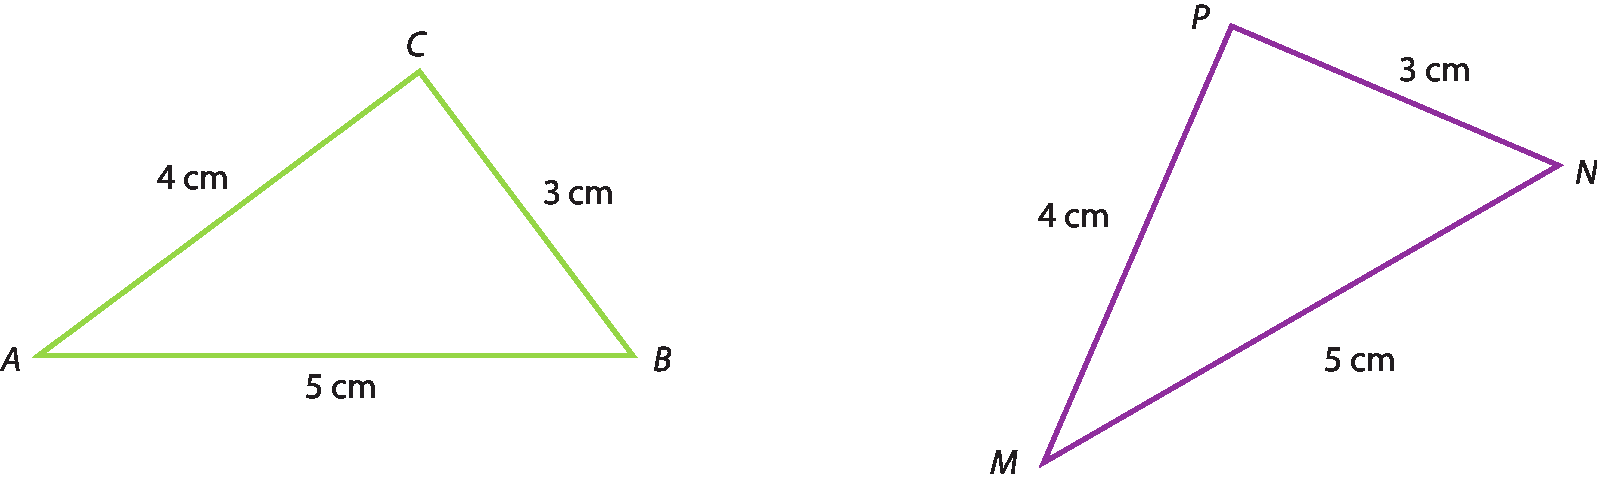 Triângulo A B C. Os lados medem: AC, 4 centímetros. AB, 5 centímetros. BC, 3 centímetros. Triângulo M N P. Os lados medem: M N, 5 centímetros. N P, 3 centímetros. P M, 4 centímetros.